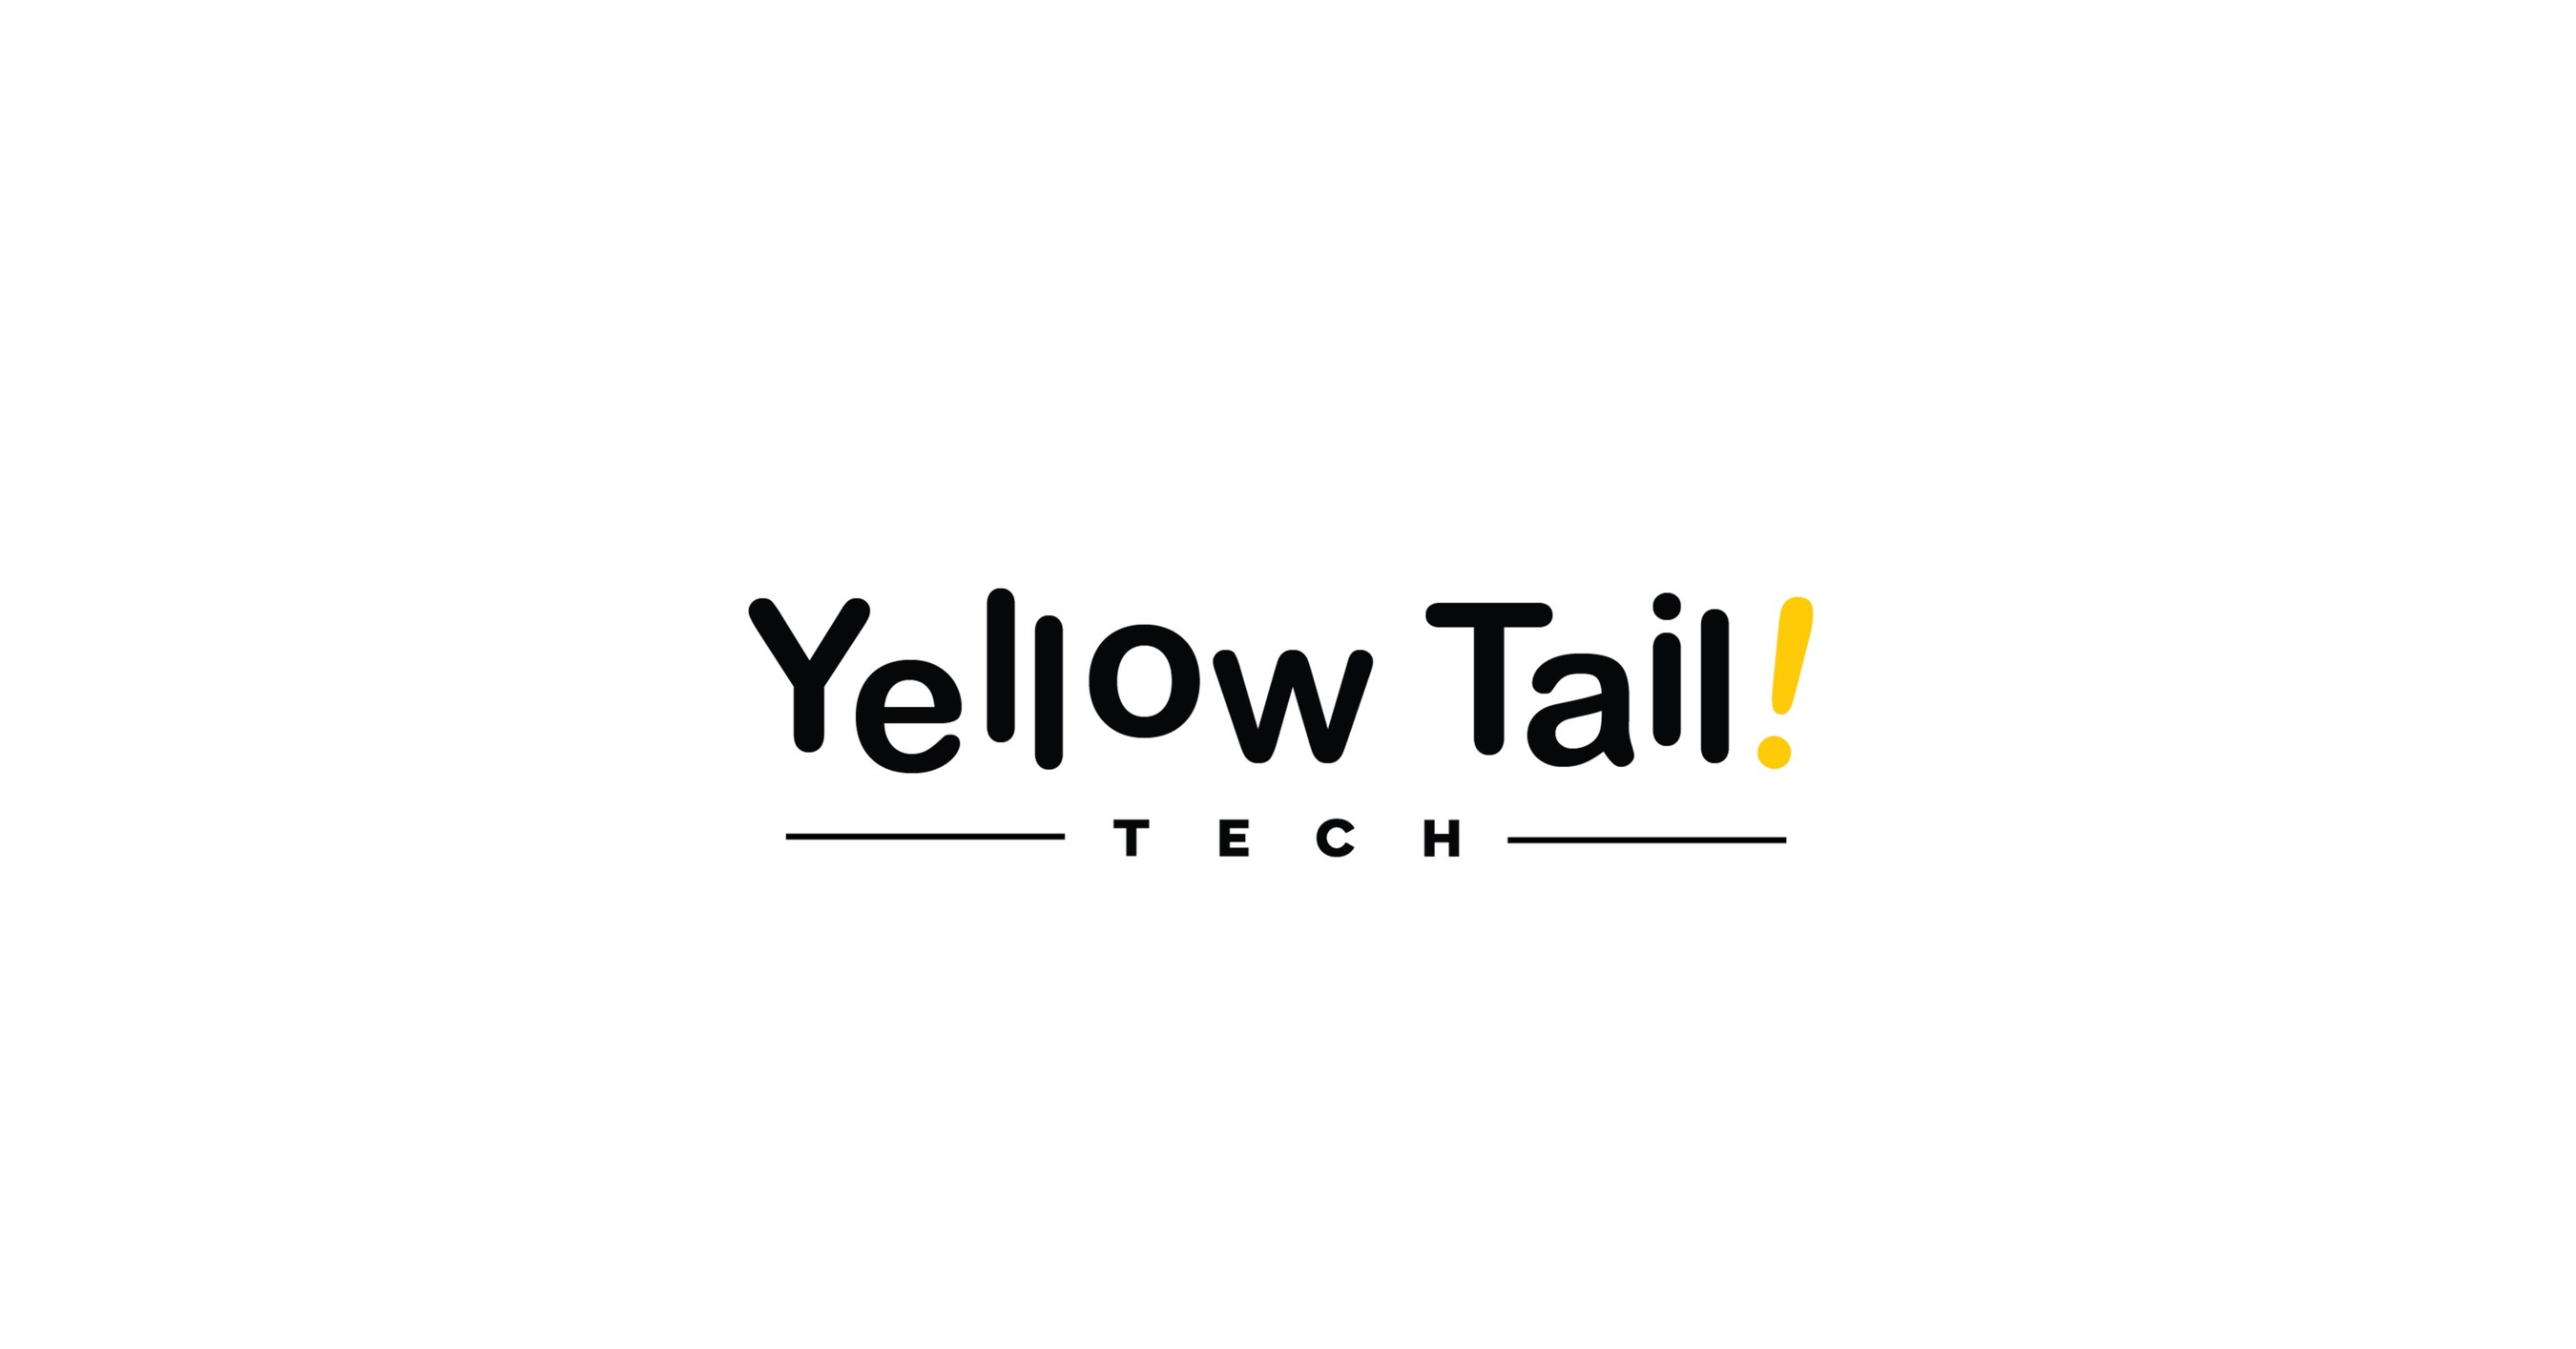 Code Fellows bermitra dengan Yellow Tail Tech untuk membawa pendidikan teknologi ke area metro Washington, DC